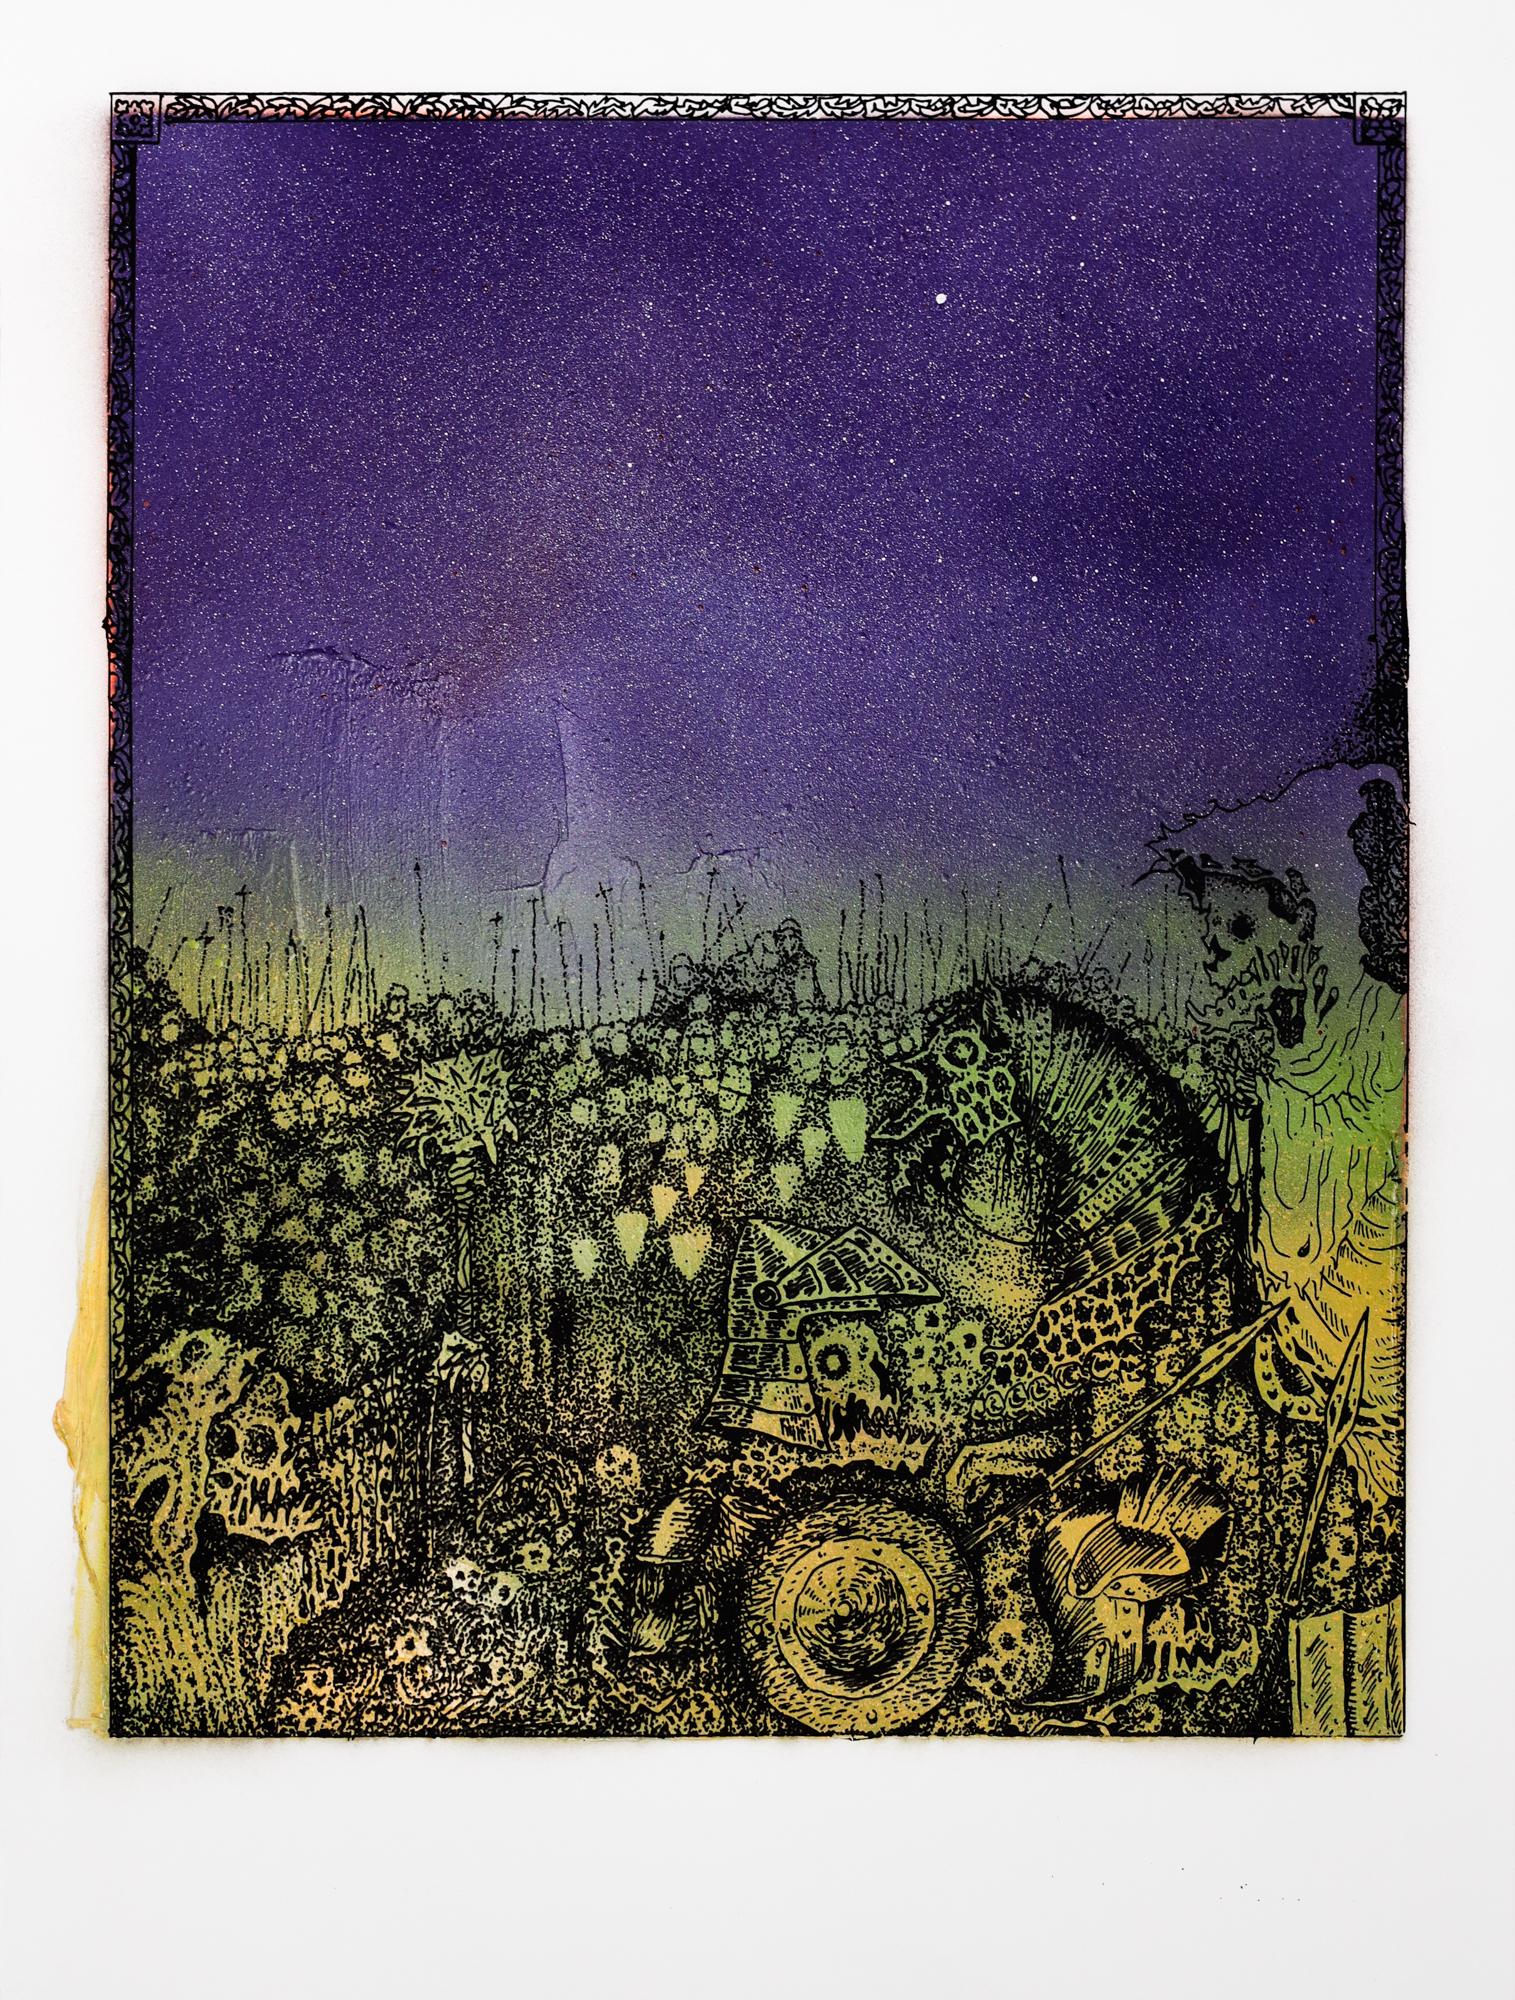 Dieses Werk mit dem Titel "Jake Yeager Untitled 8" ist ein Originalkunstwerk von Jake Yeager und wurde mit Sprühfarbe und Siebdruck hergestellt. Dieses Stück misst 24 "h x 18 "b.

Über Space 1026
Der 1997 in der Arch Street 1026 in Philadelphias